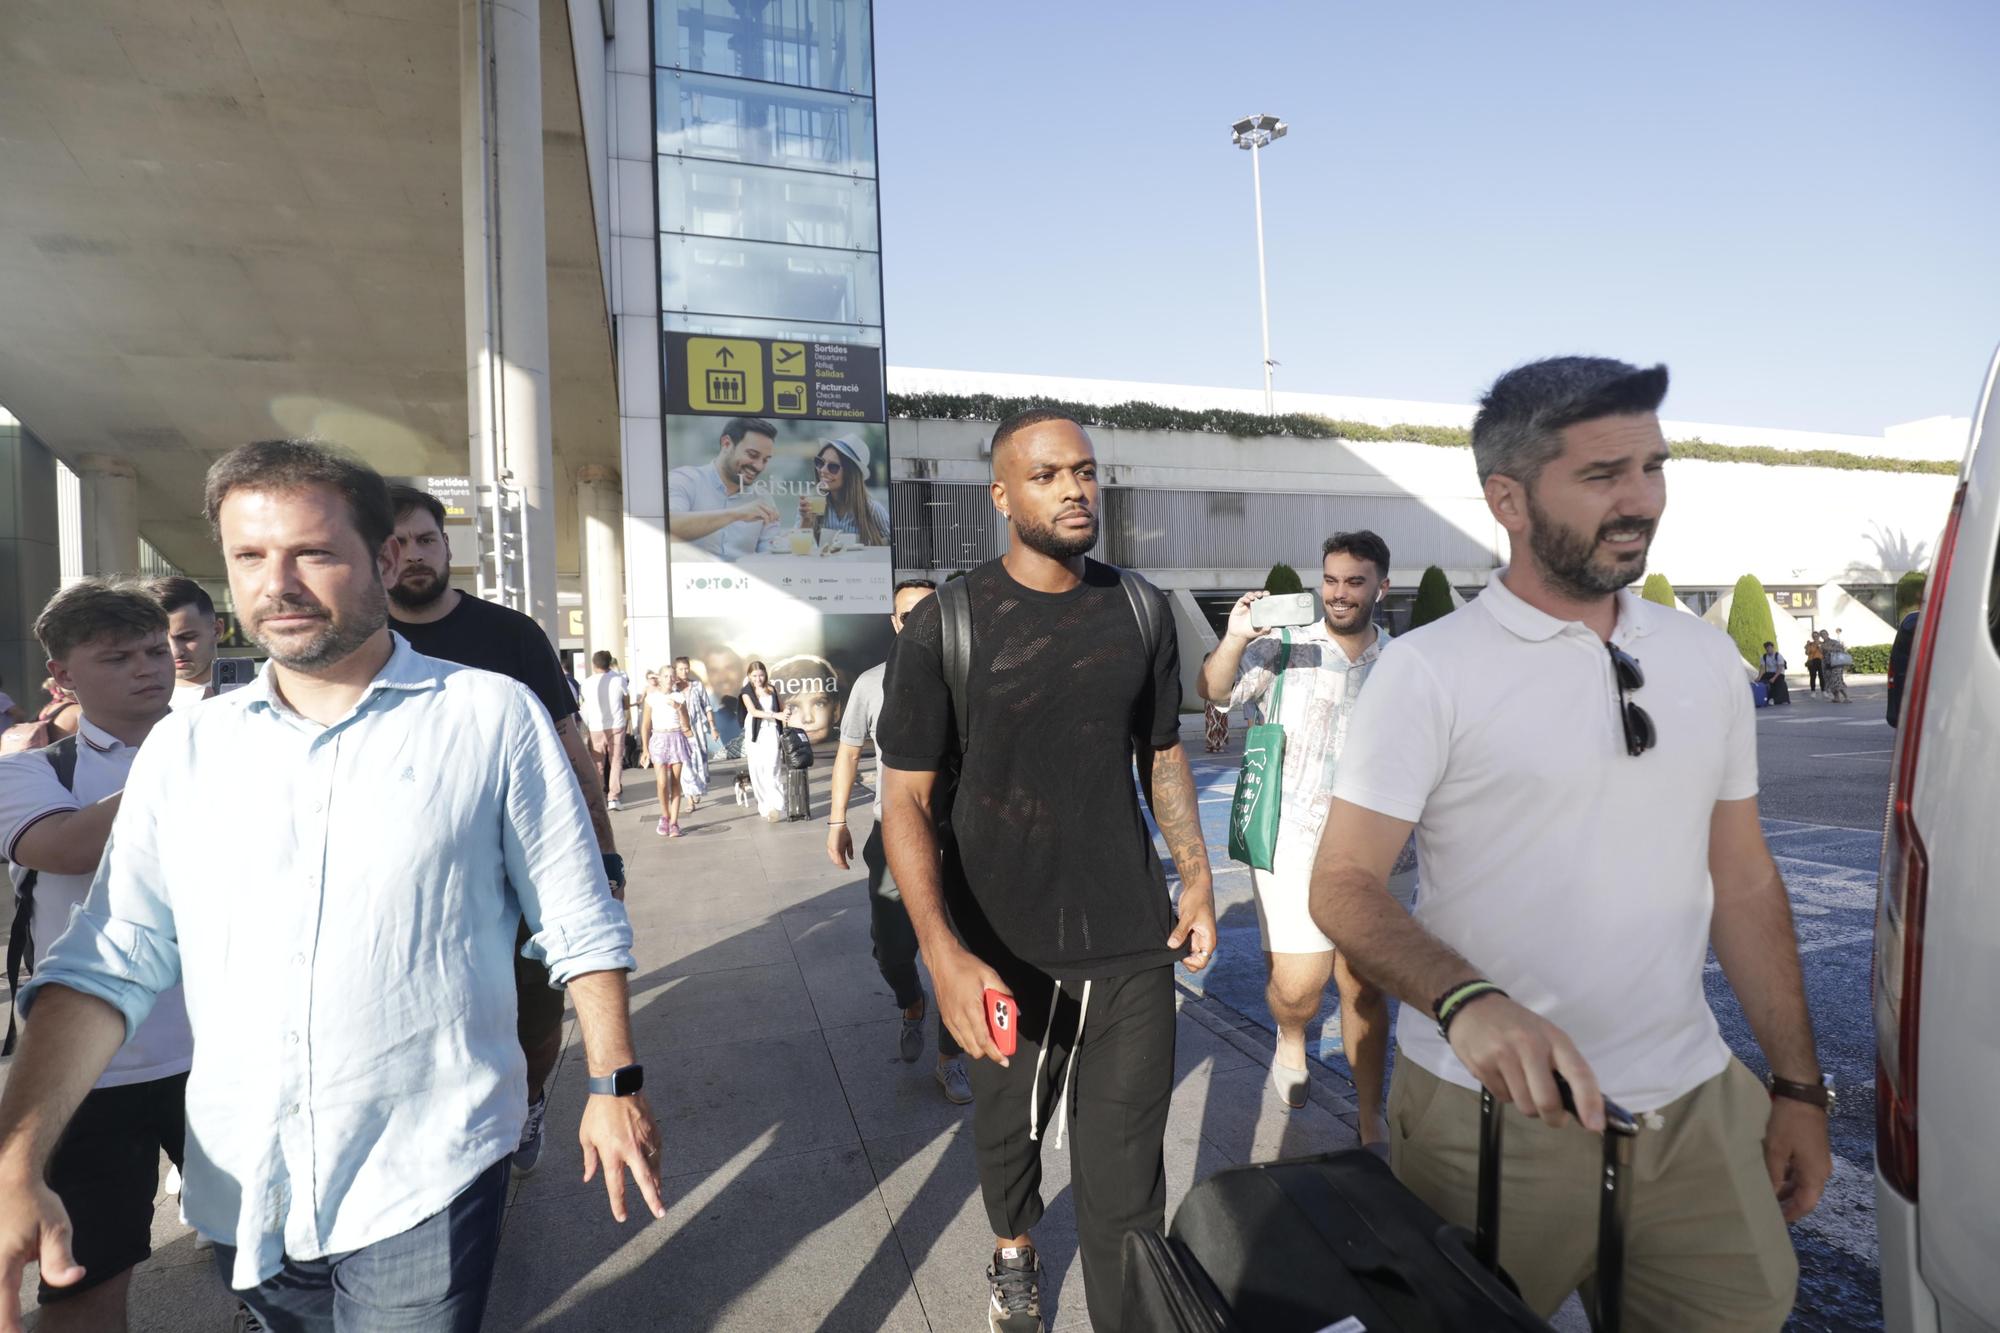 Cyle Larin llega a Mallorca: "Estoy muy feliz"